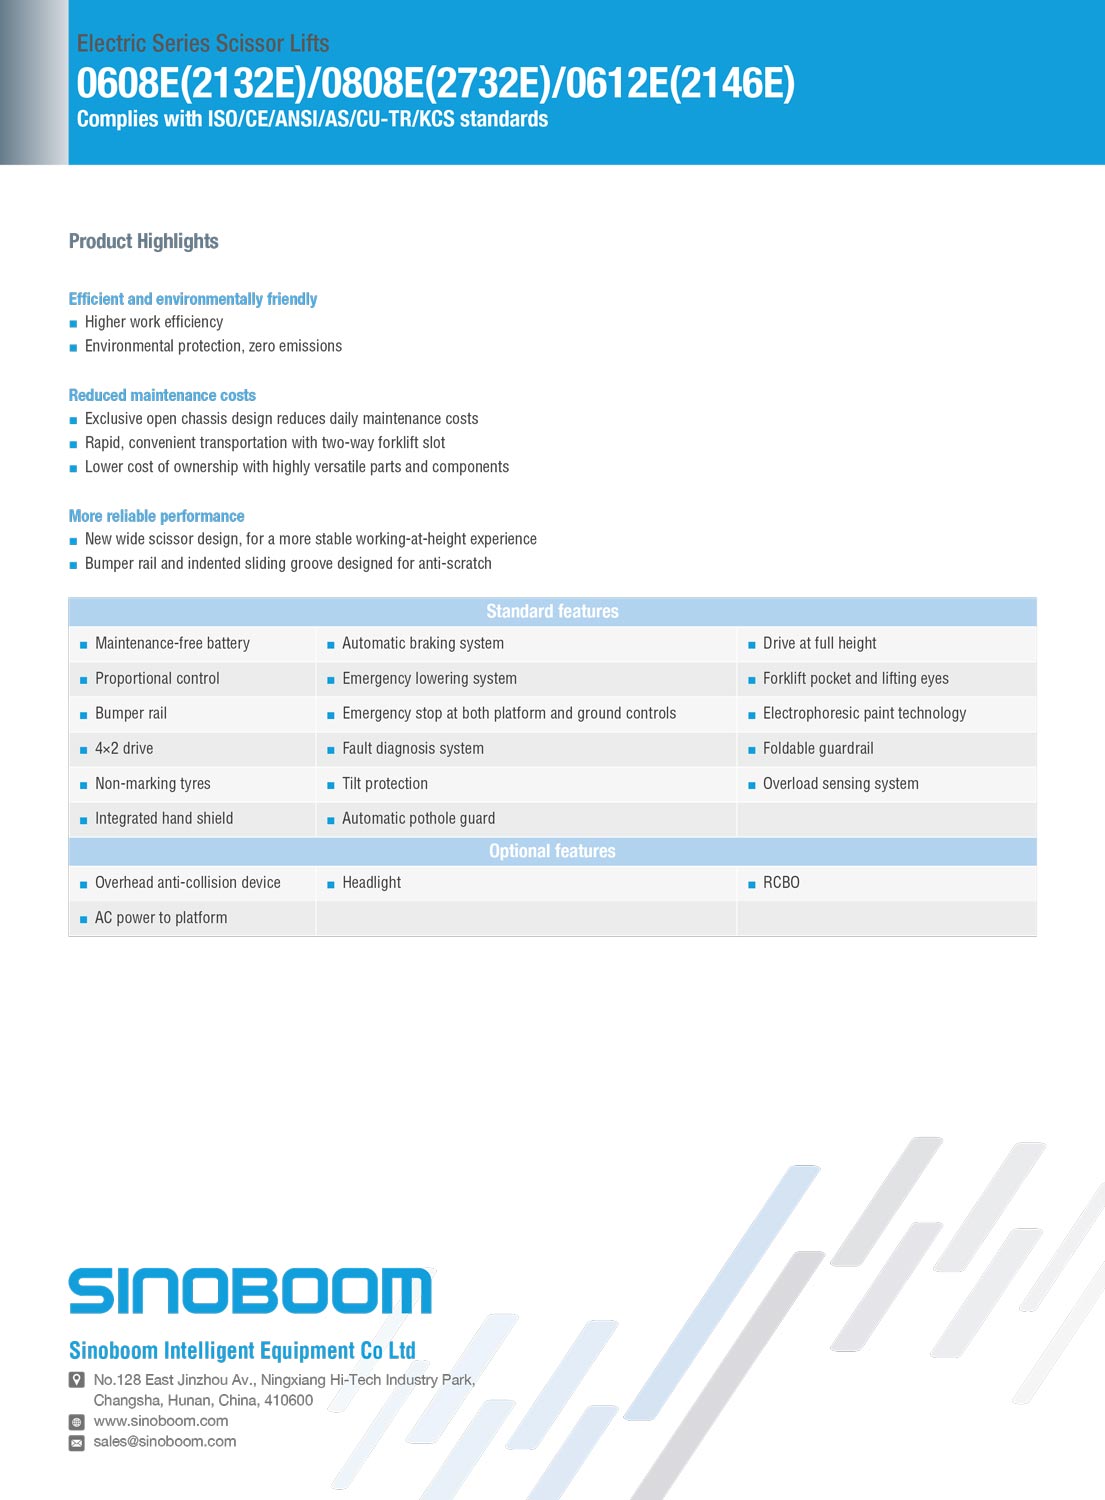 image of spec sheet for Sinoboom 2732E lift